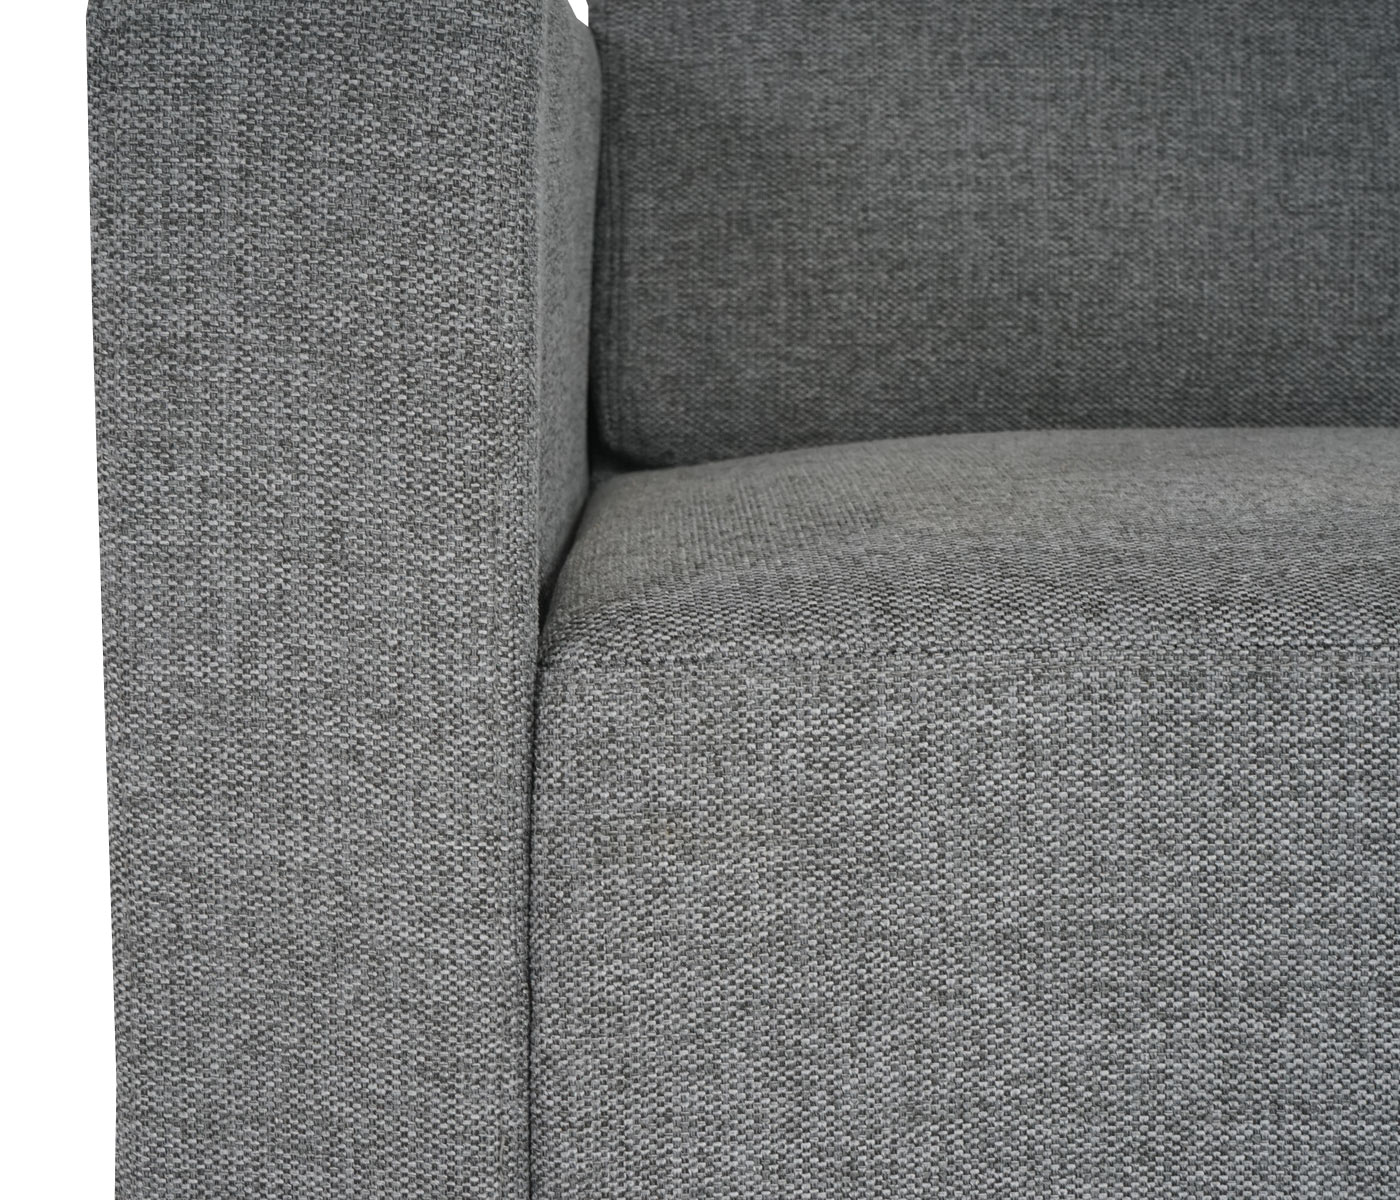 2er Sofa Couch Lyon Detailbild Lehne